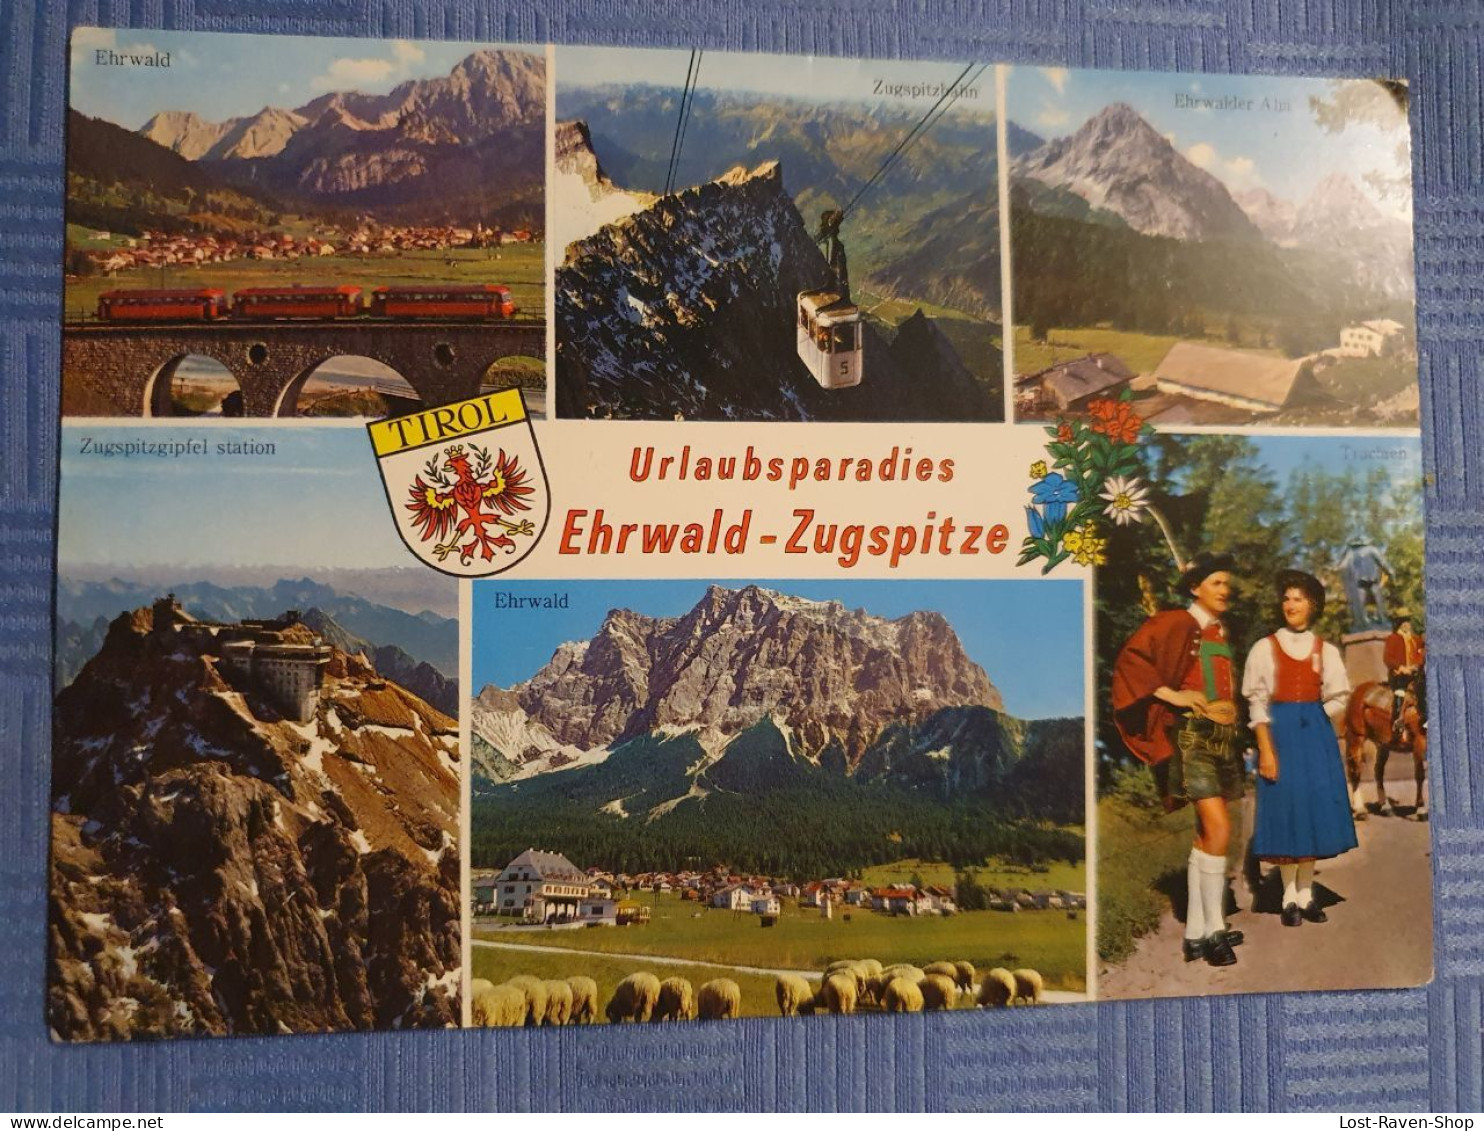 Urlaubsparadies Ehrwald-Zugspitze - Ehrwald